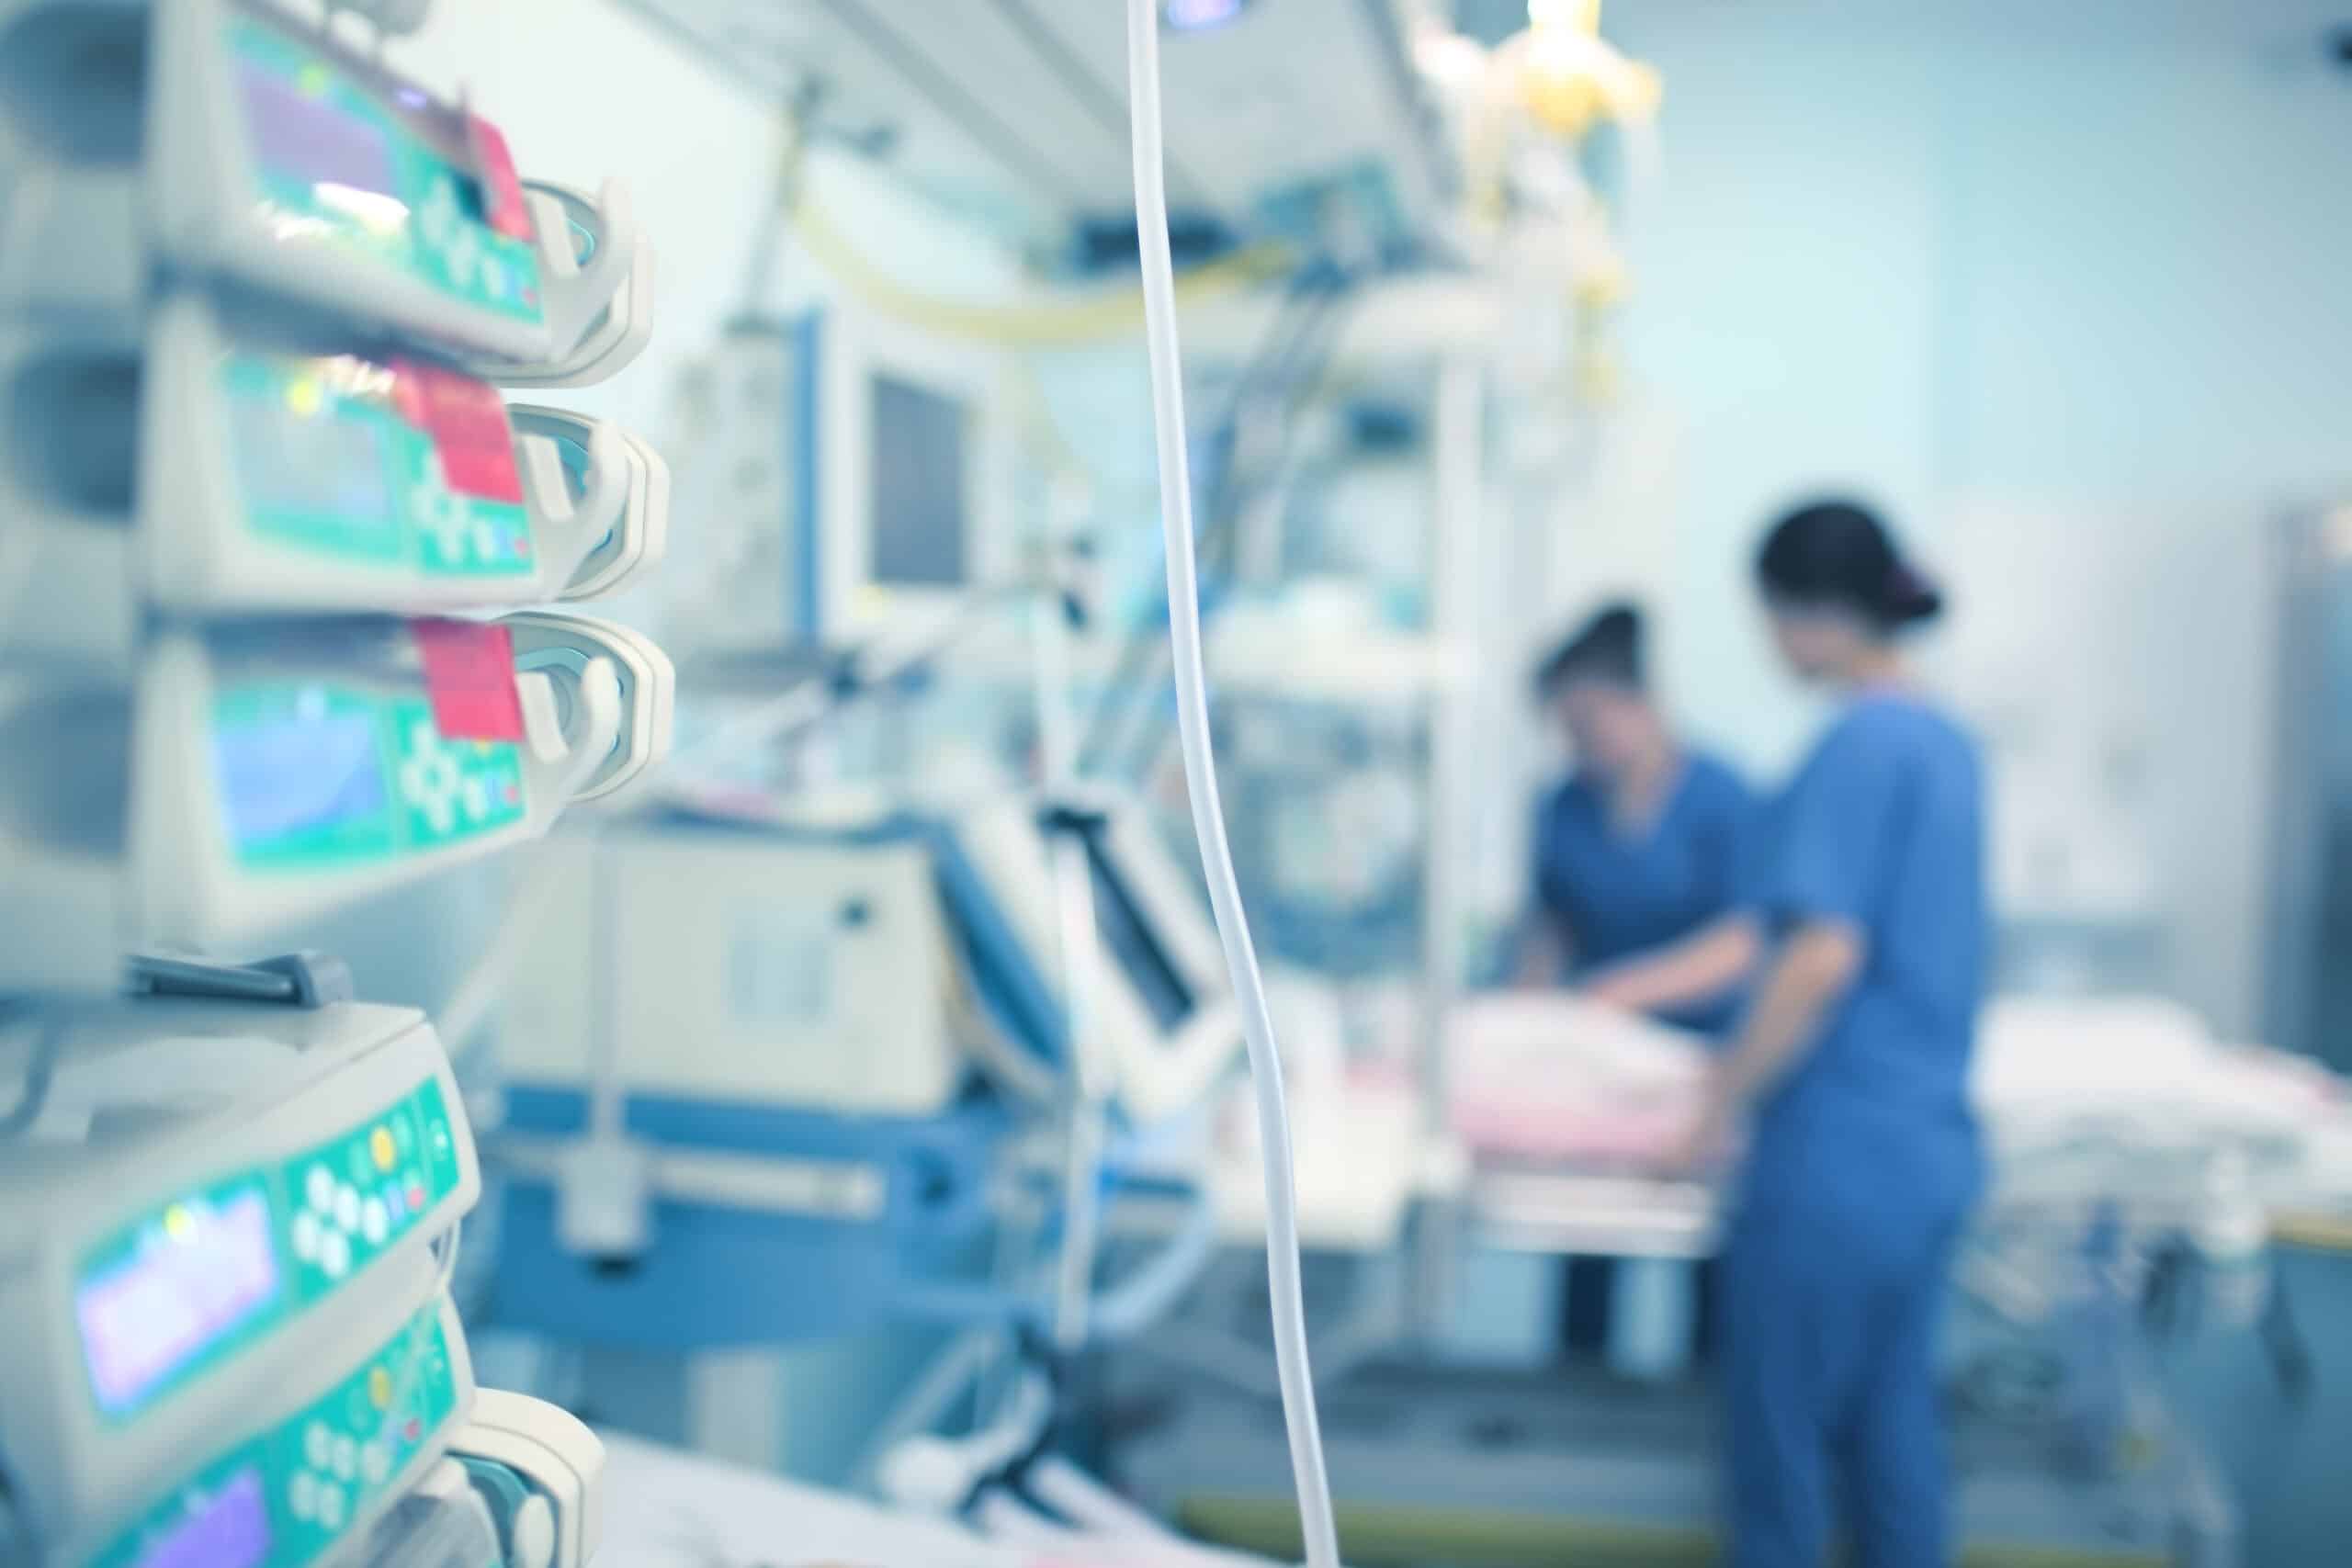 Relatório de Segurança: hospitais investem na prevenção e controle de IRAS, mas falham na implementação de outros importantes protocolos